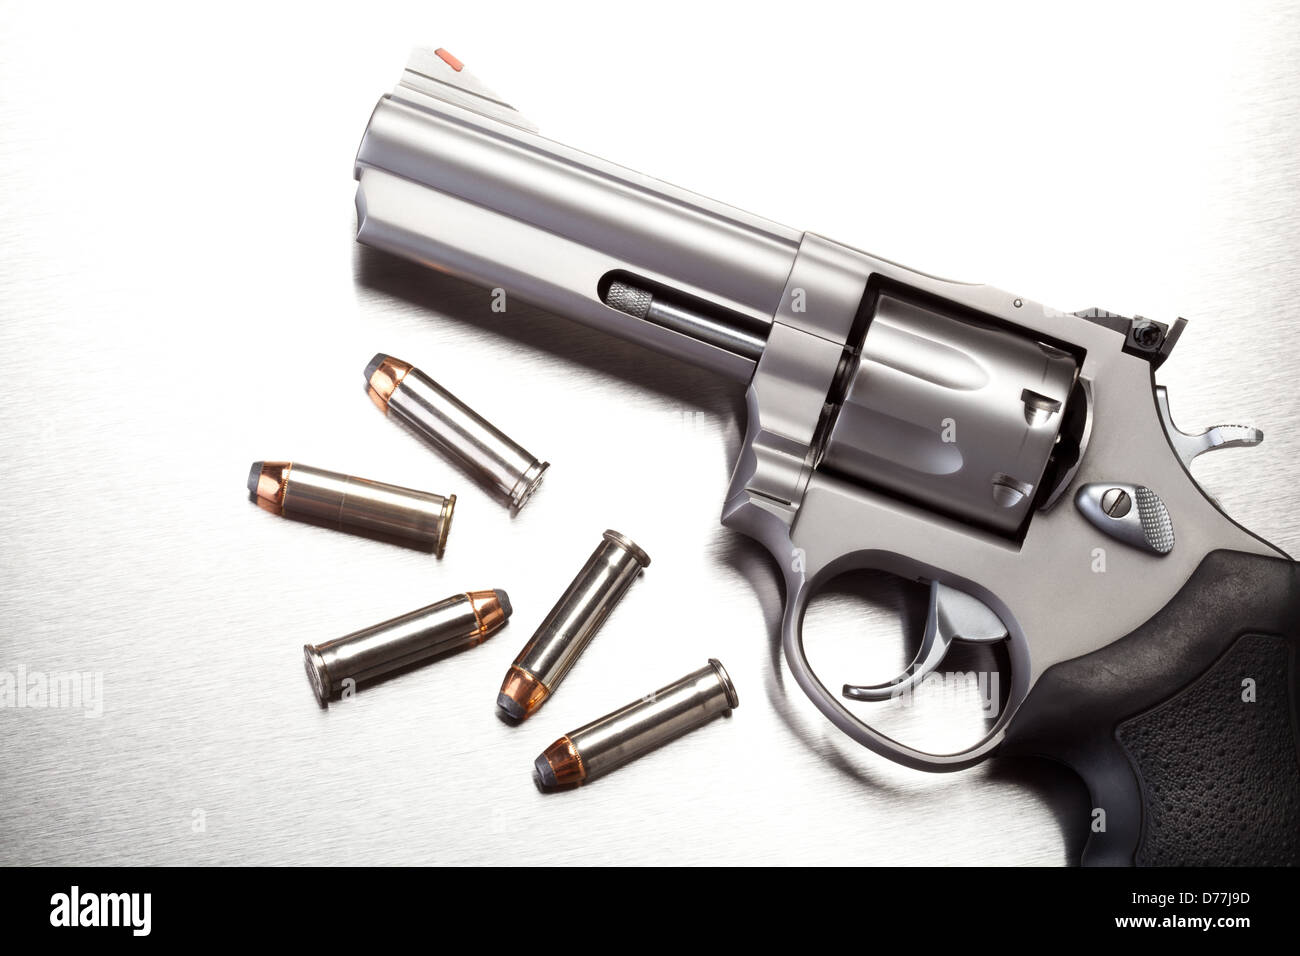 Pistole mit Kugeln auf der Stahloberfläche - moderne Revolver Pistole Stockfoto